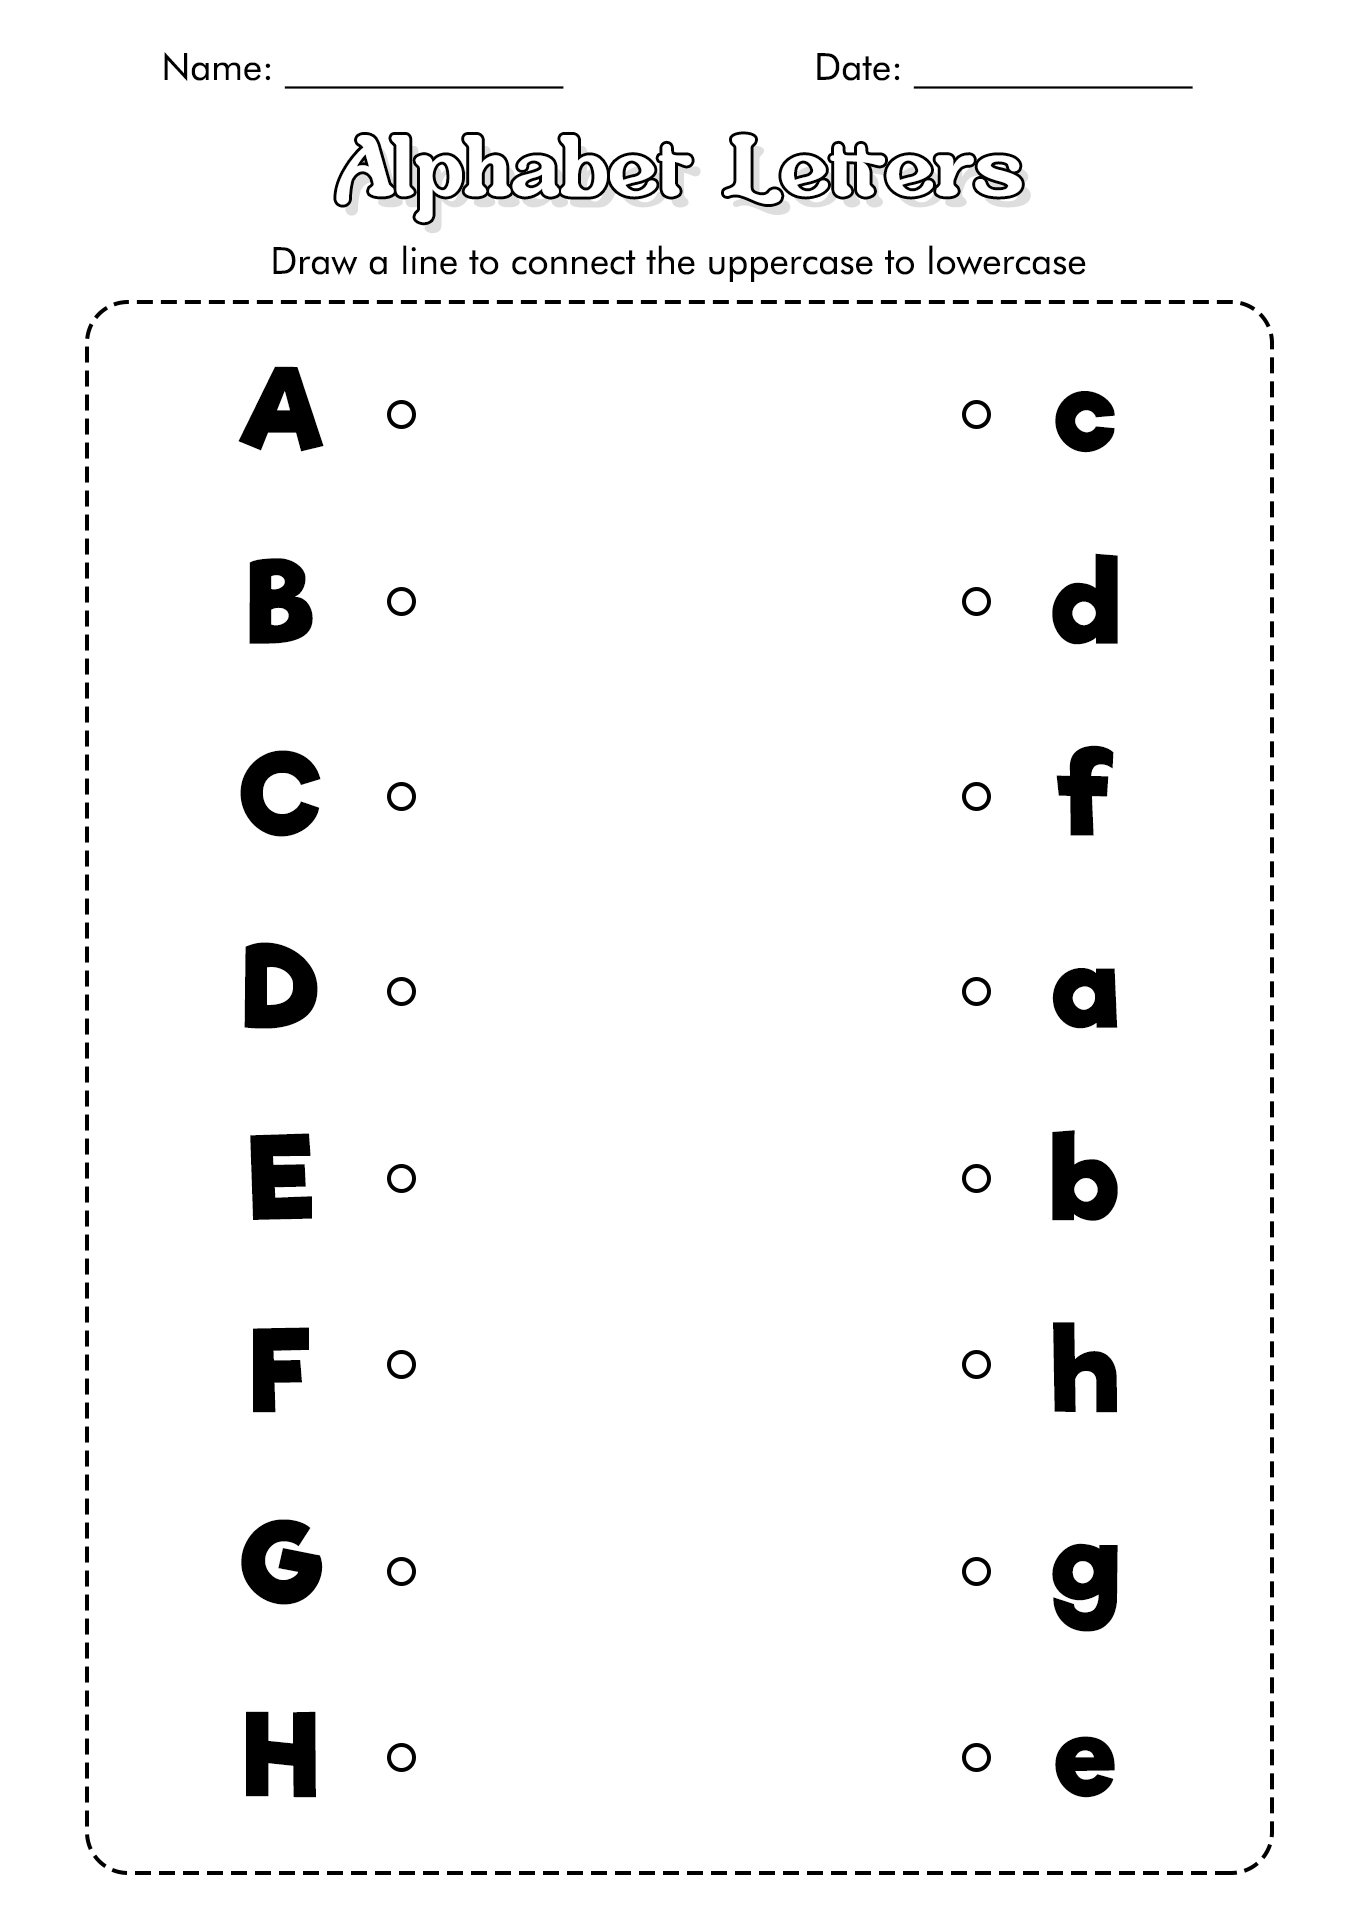 letter recognition worksheets for kids letter recognition worksheets - letter recognition worksheets letter recognition worksheets letter | kindergarten letter recognition worksheets pdf